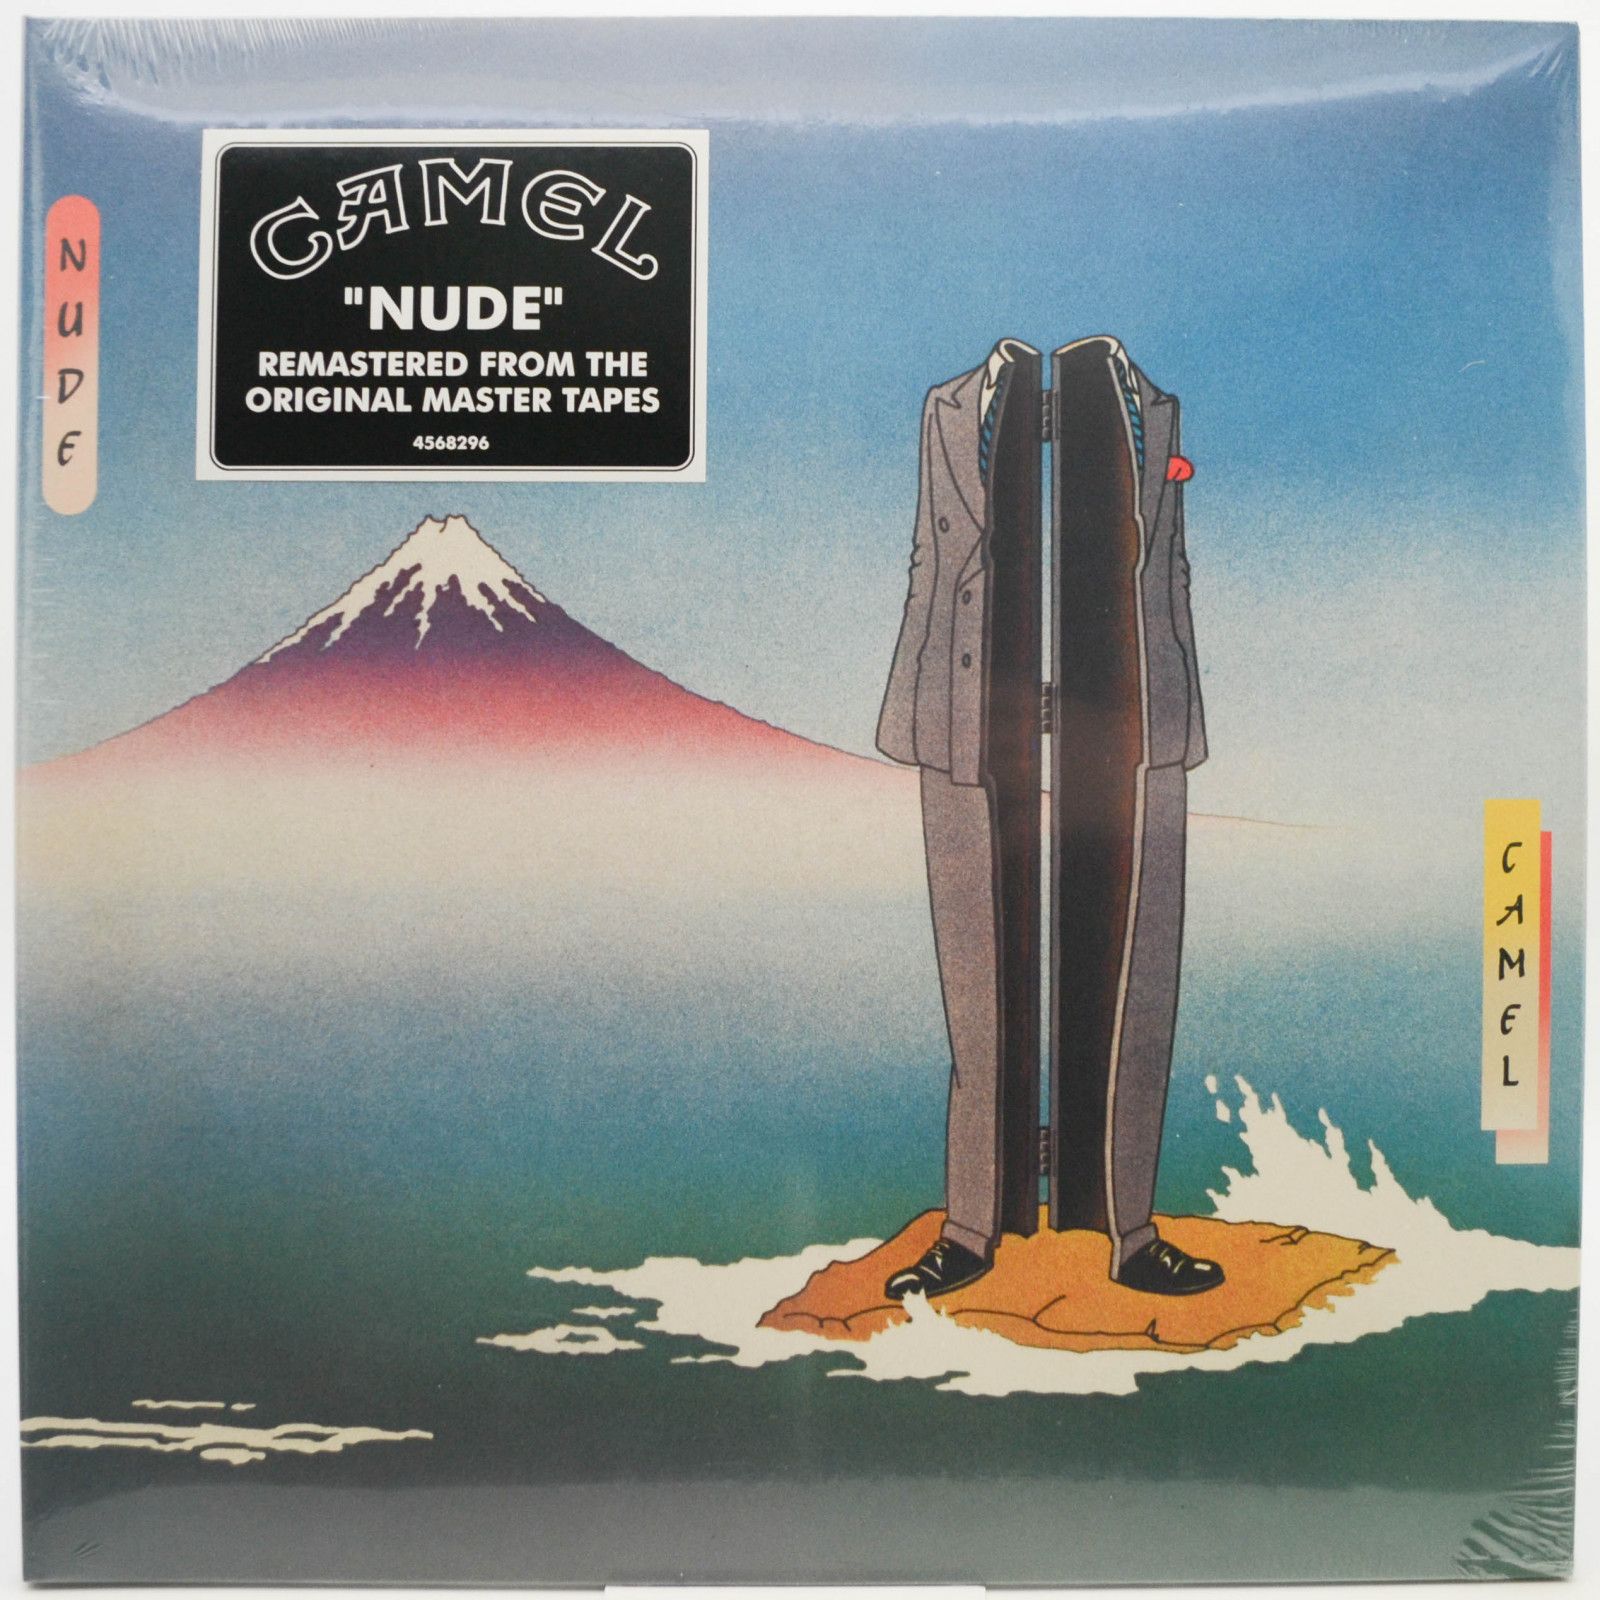 Camel — Nude, 1981